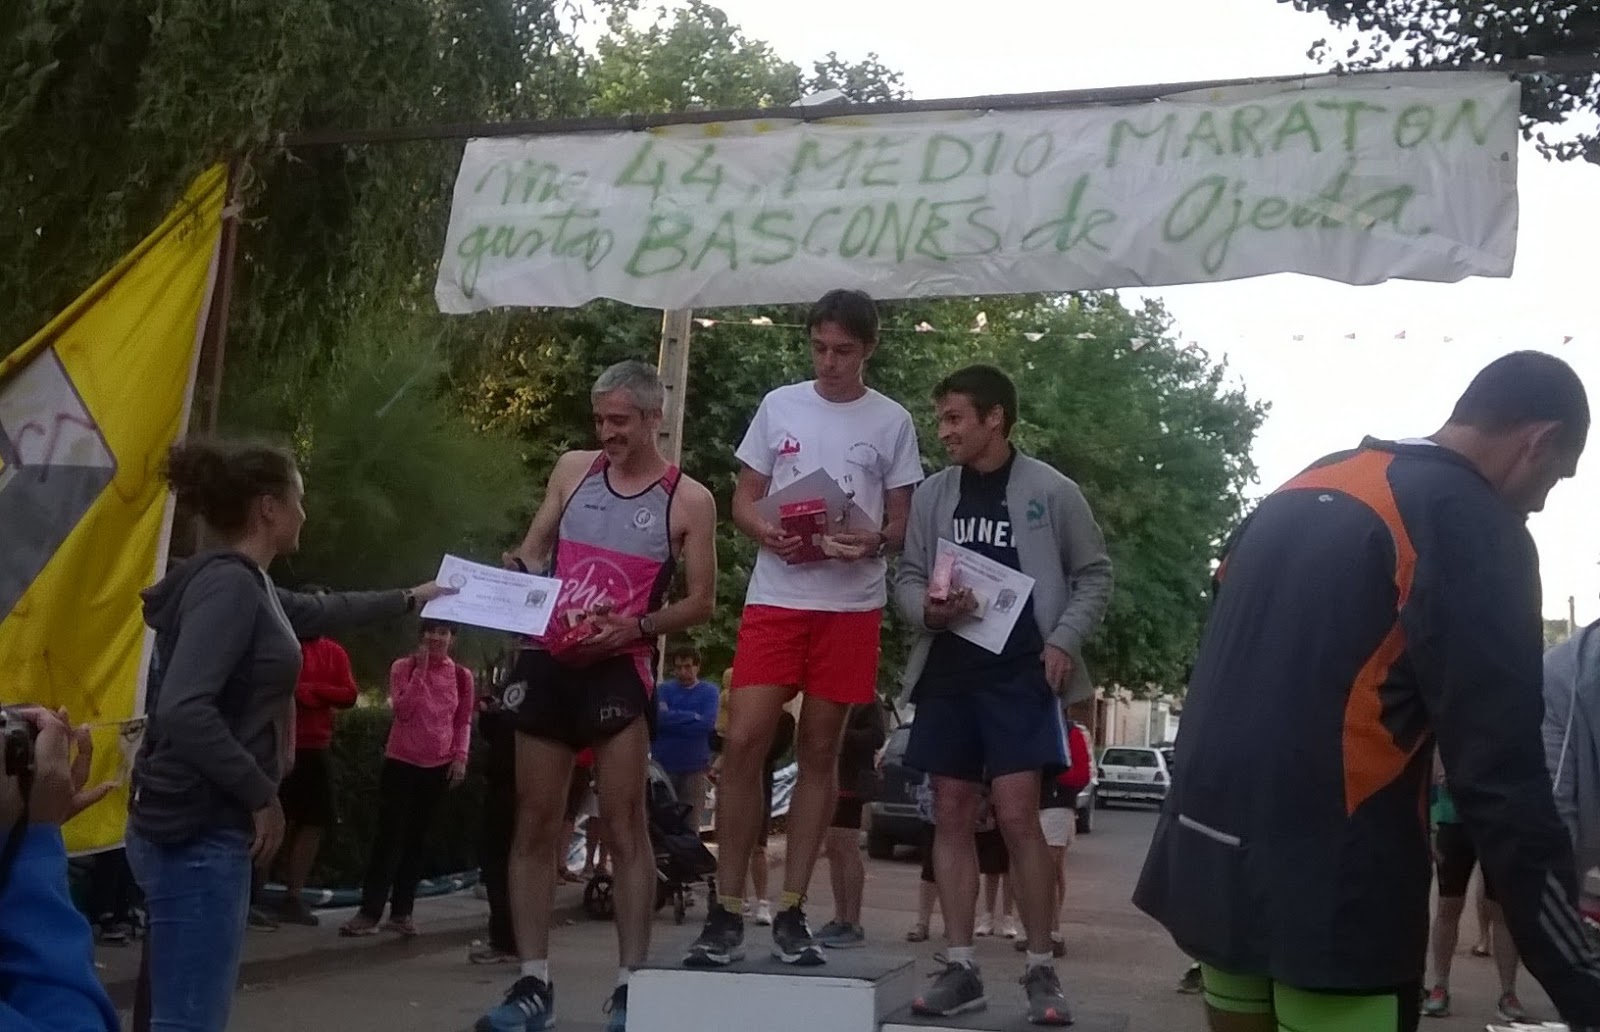 XLIV Media Maratón Báscones de Ojeda (Palencia)